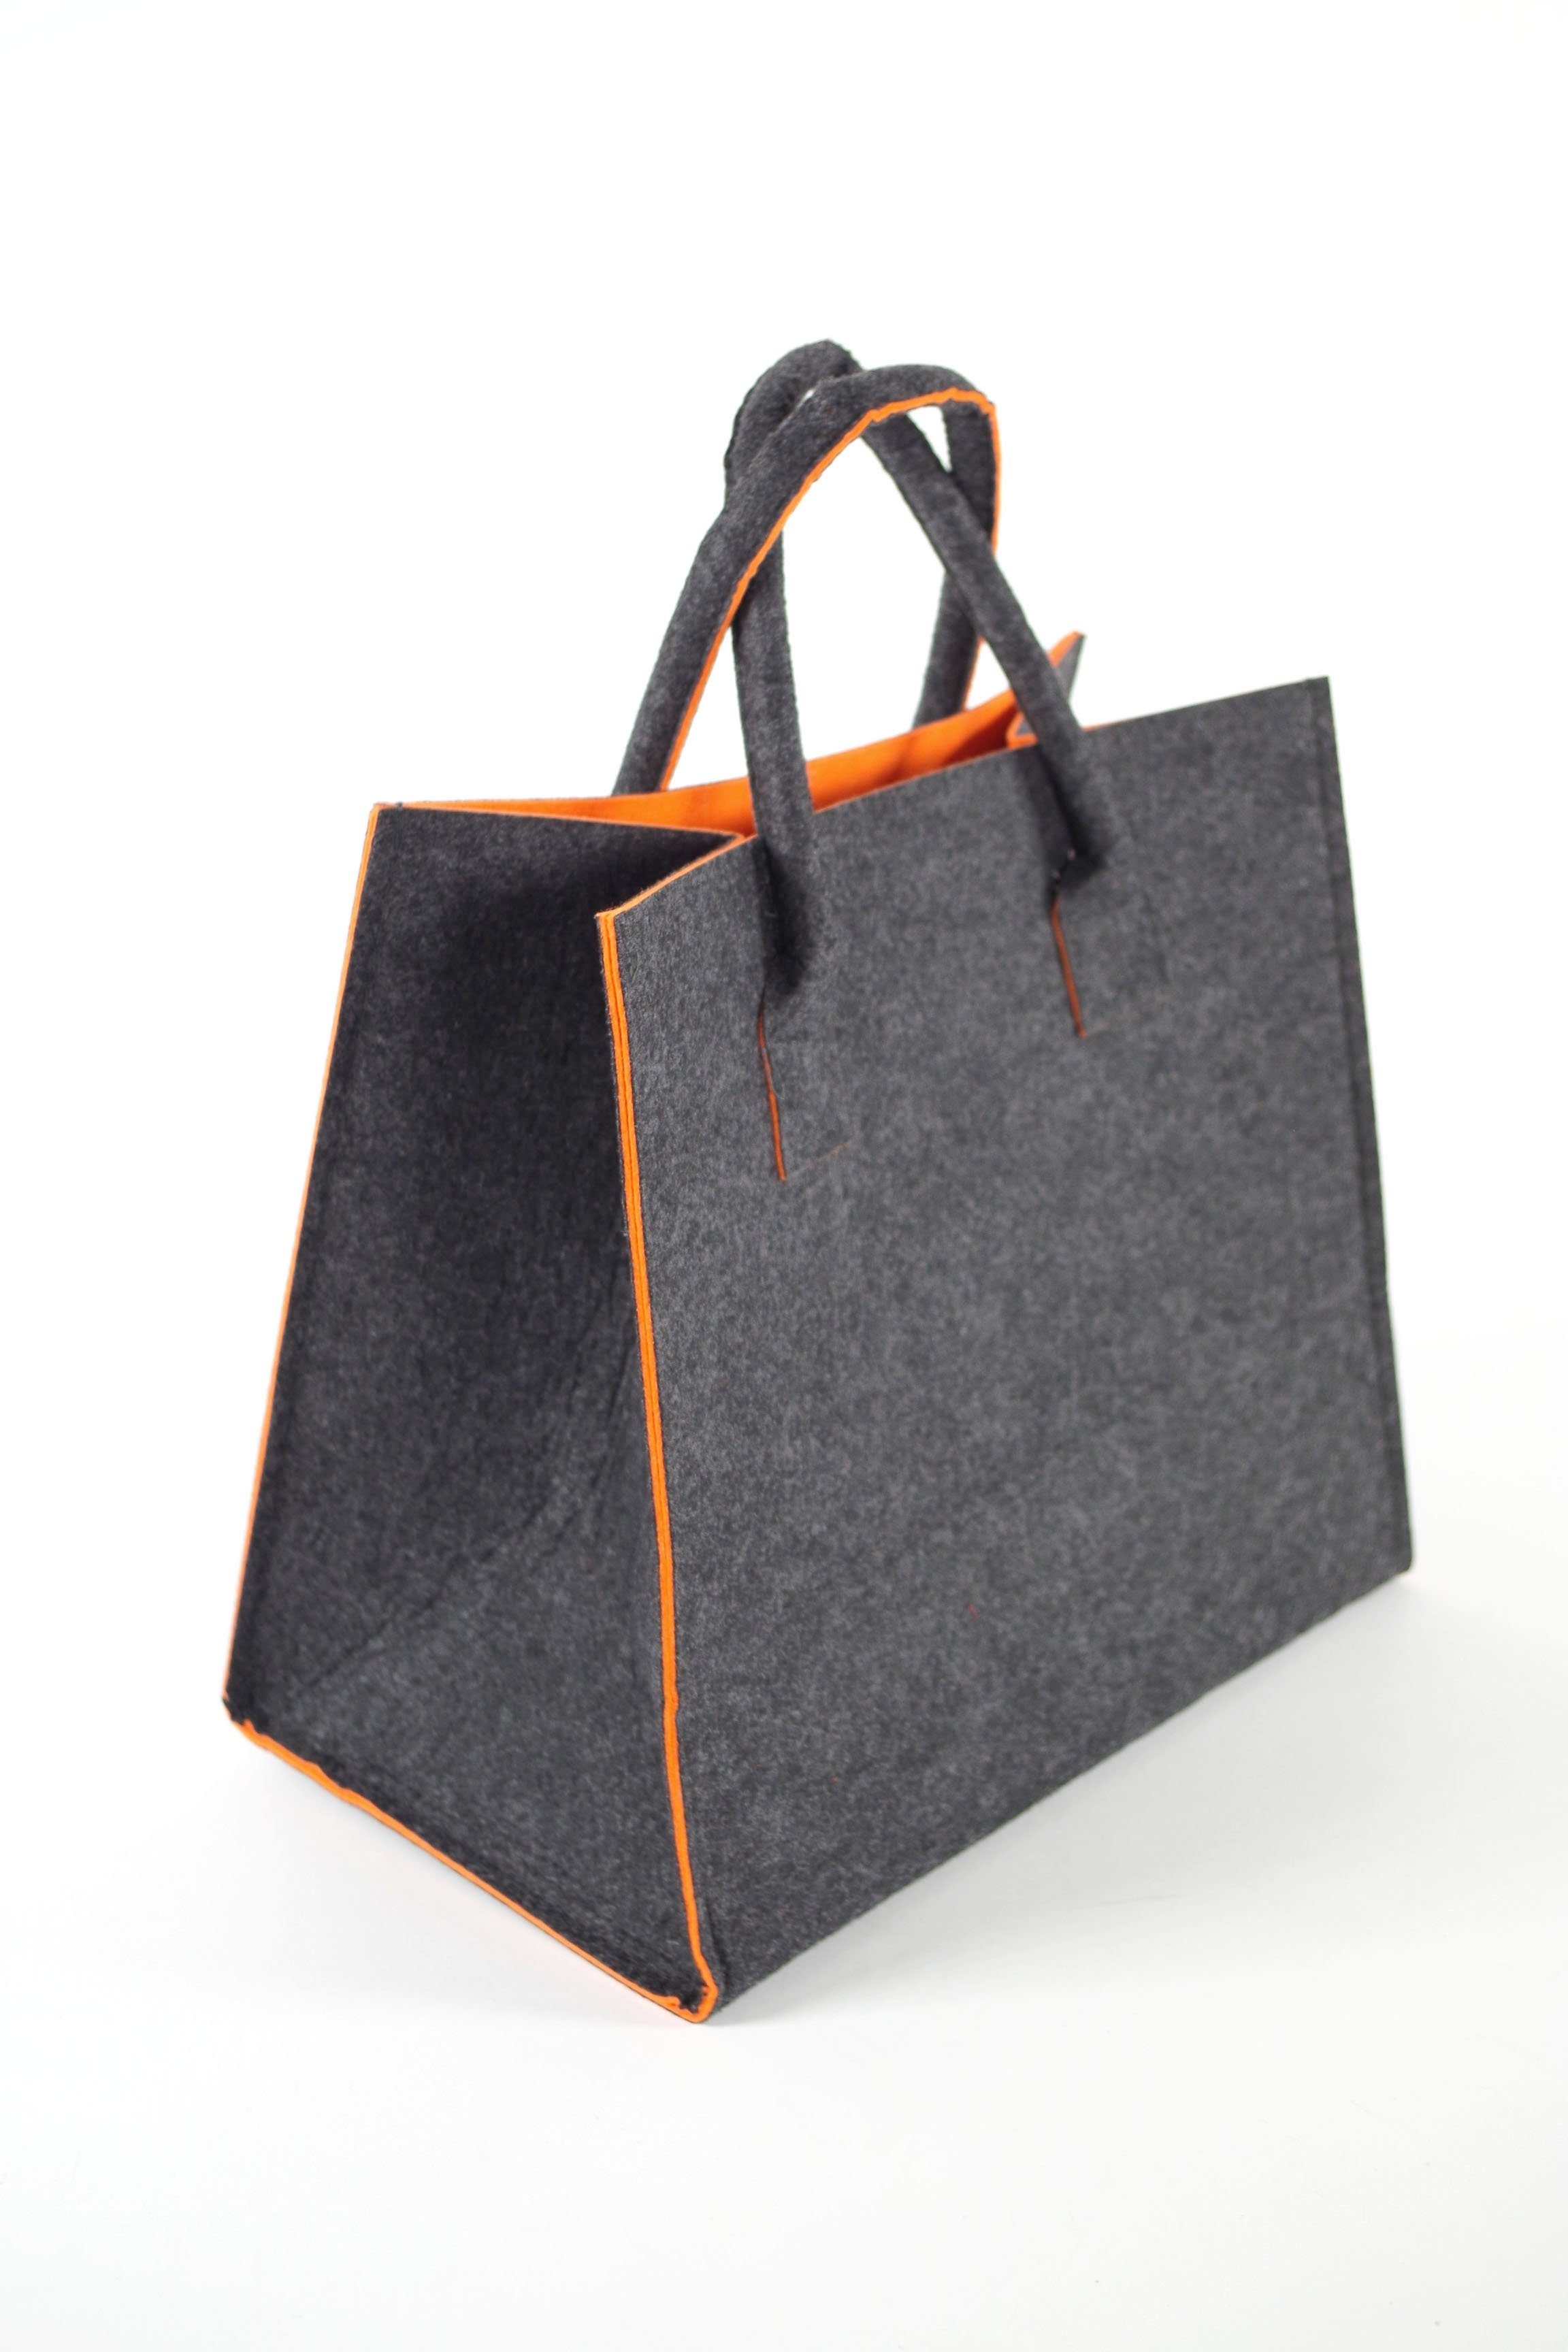 Kobolo Einkaufsshopper Filztasche innen orange, außen grau meliert 20 l